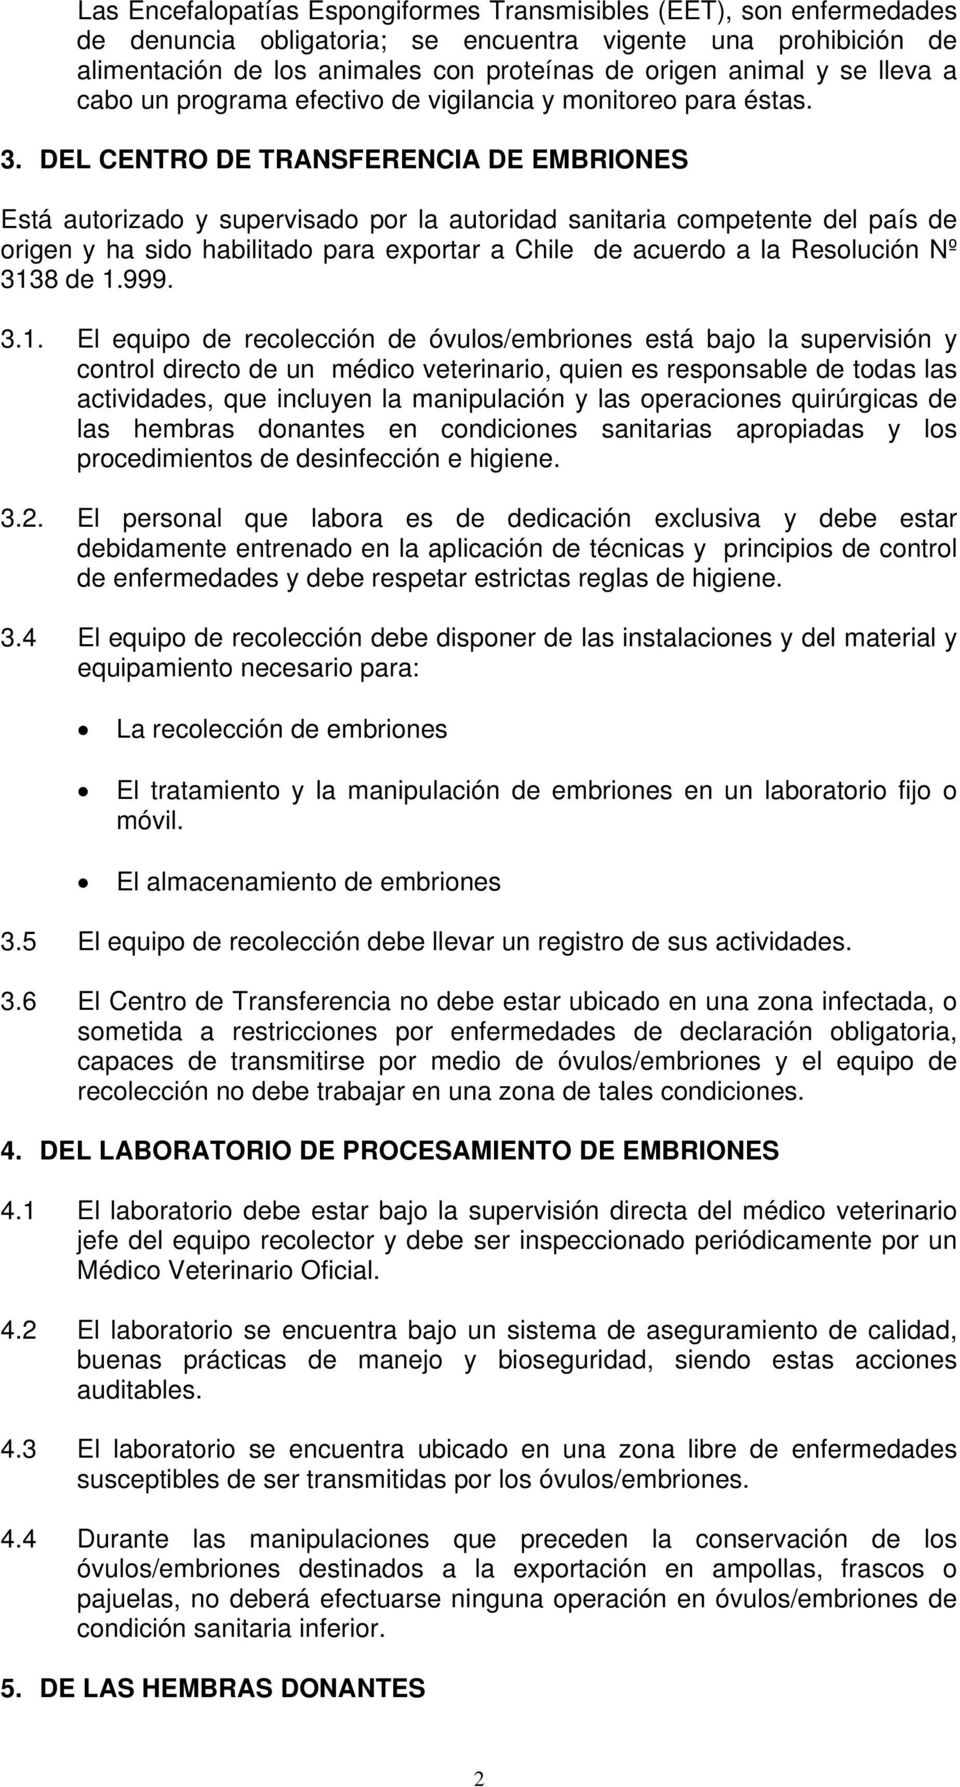 DEL CENTRO DE TRANSFERENCIA DE EMBRIONES Está autorizado y supervisado por la autoridad sanitaria competente del país de origen y ha sido habilitado para exportar a Chile de acuerdo a la Resolución